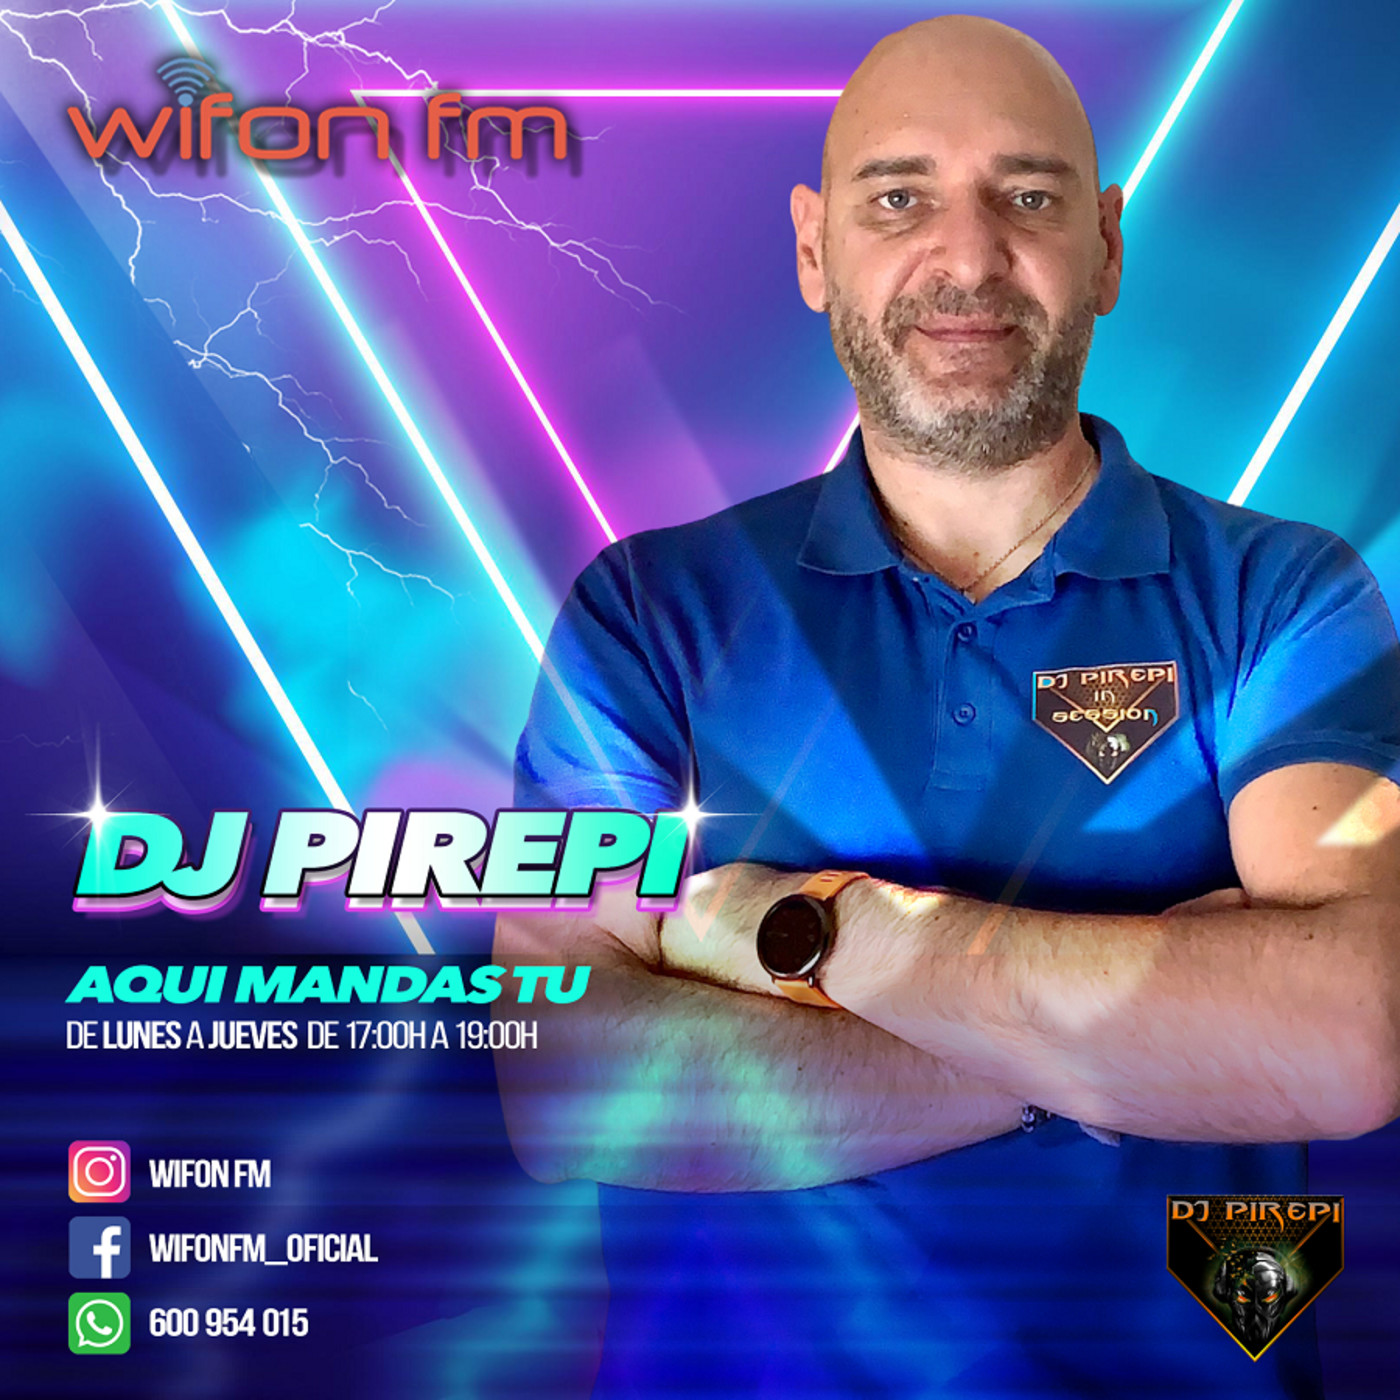 "AQUI MANDAS TU" CON DJ PIREPI EN WIFON FM